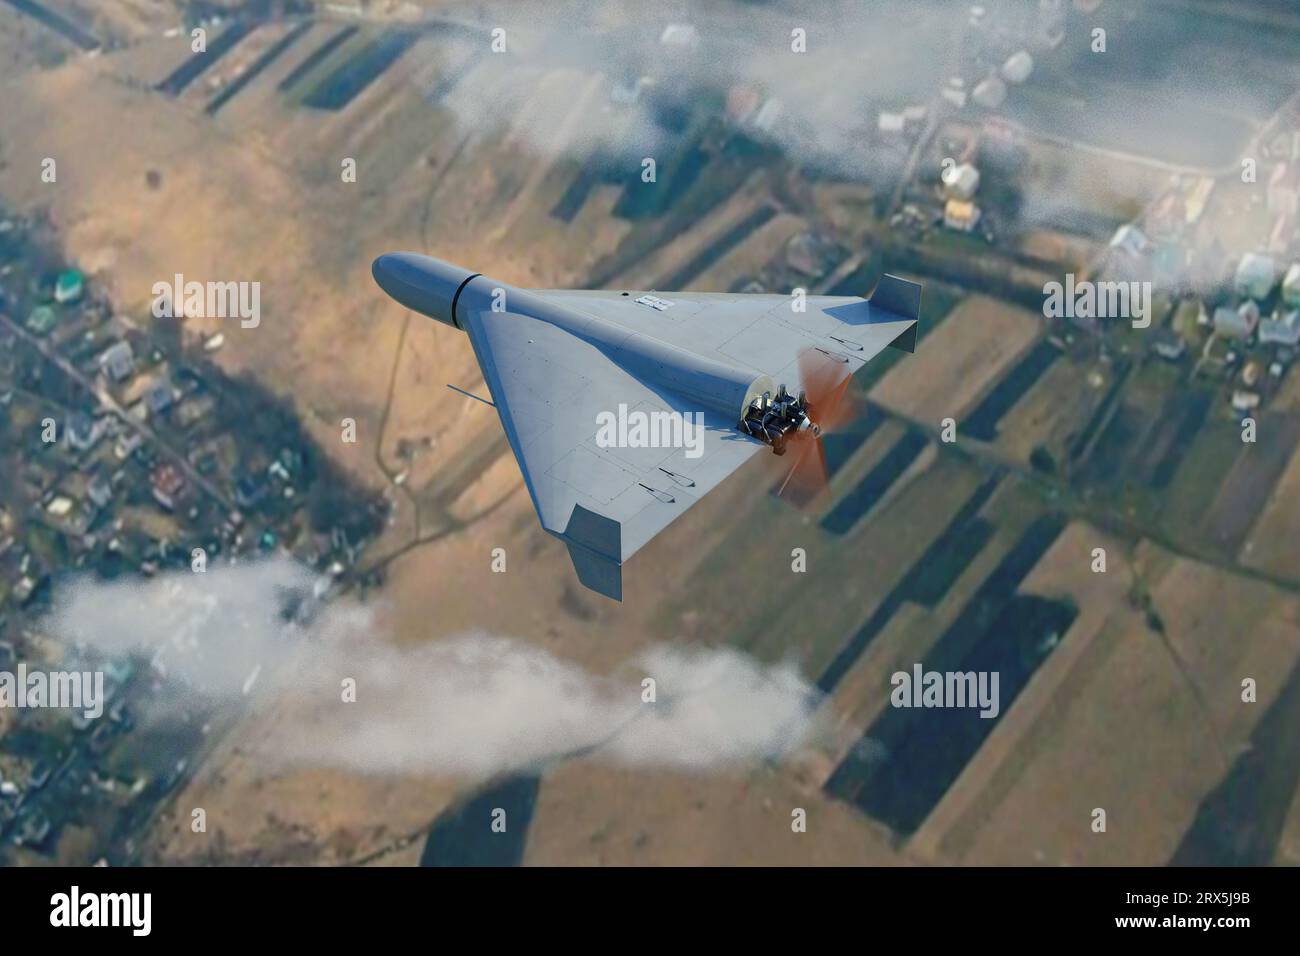 Drone kamikaze militaire Shahed volant dans les nuages au-dessus du paysage rural, drone de combat iranien dans le ciel, guerre en Ukraine, rendu 3D. Banque D'Images